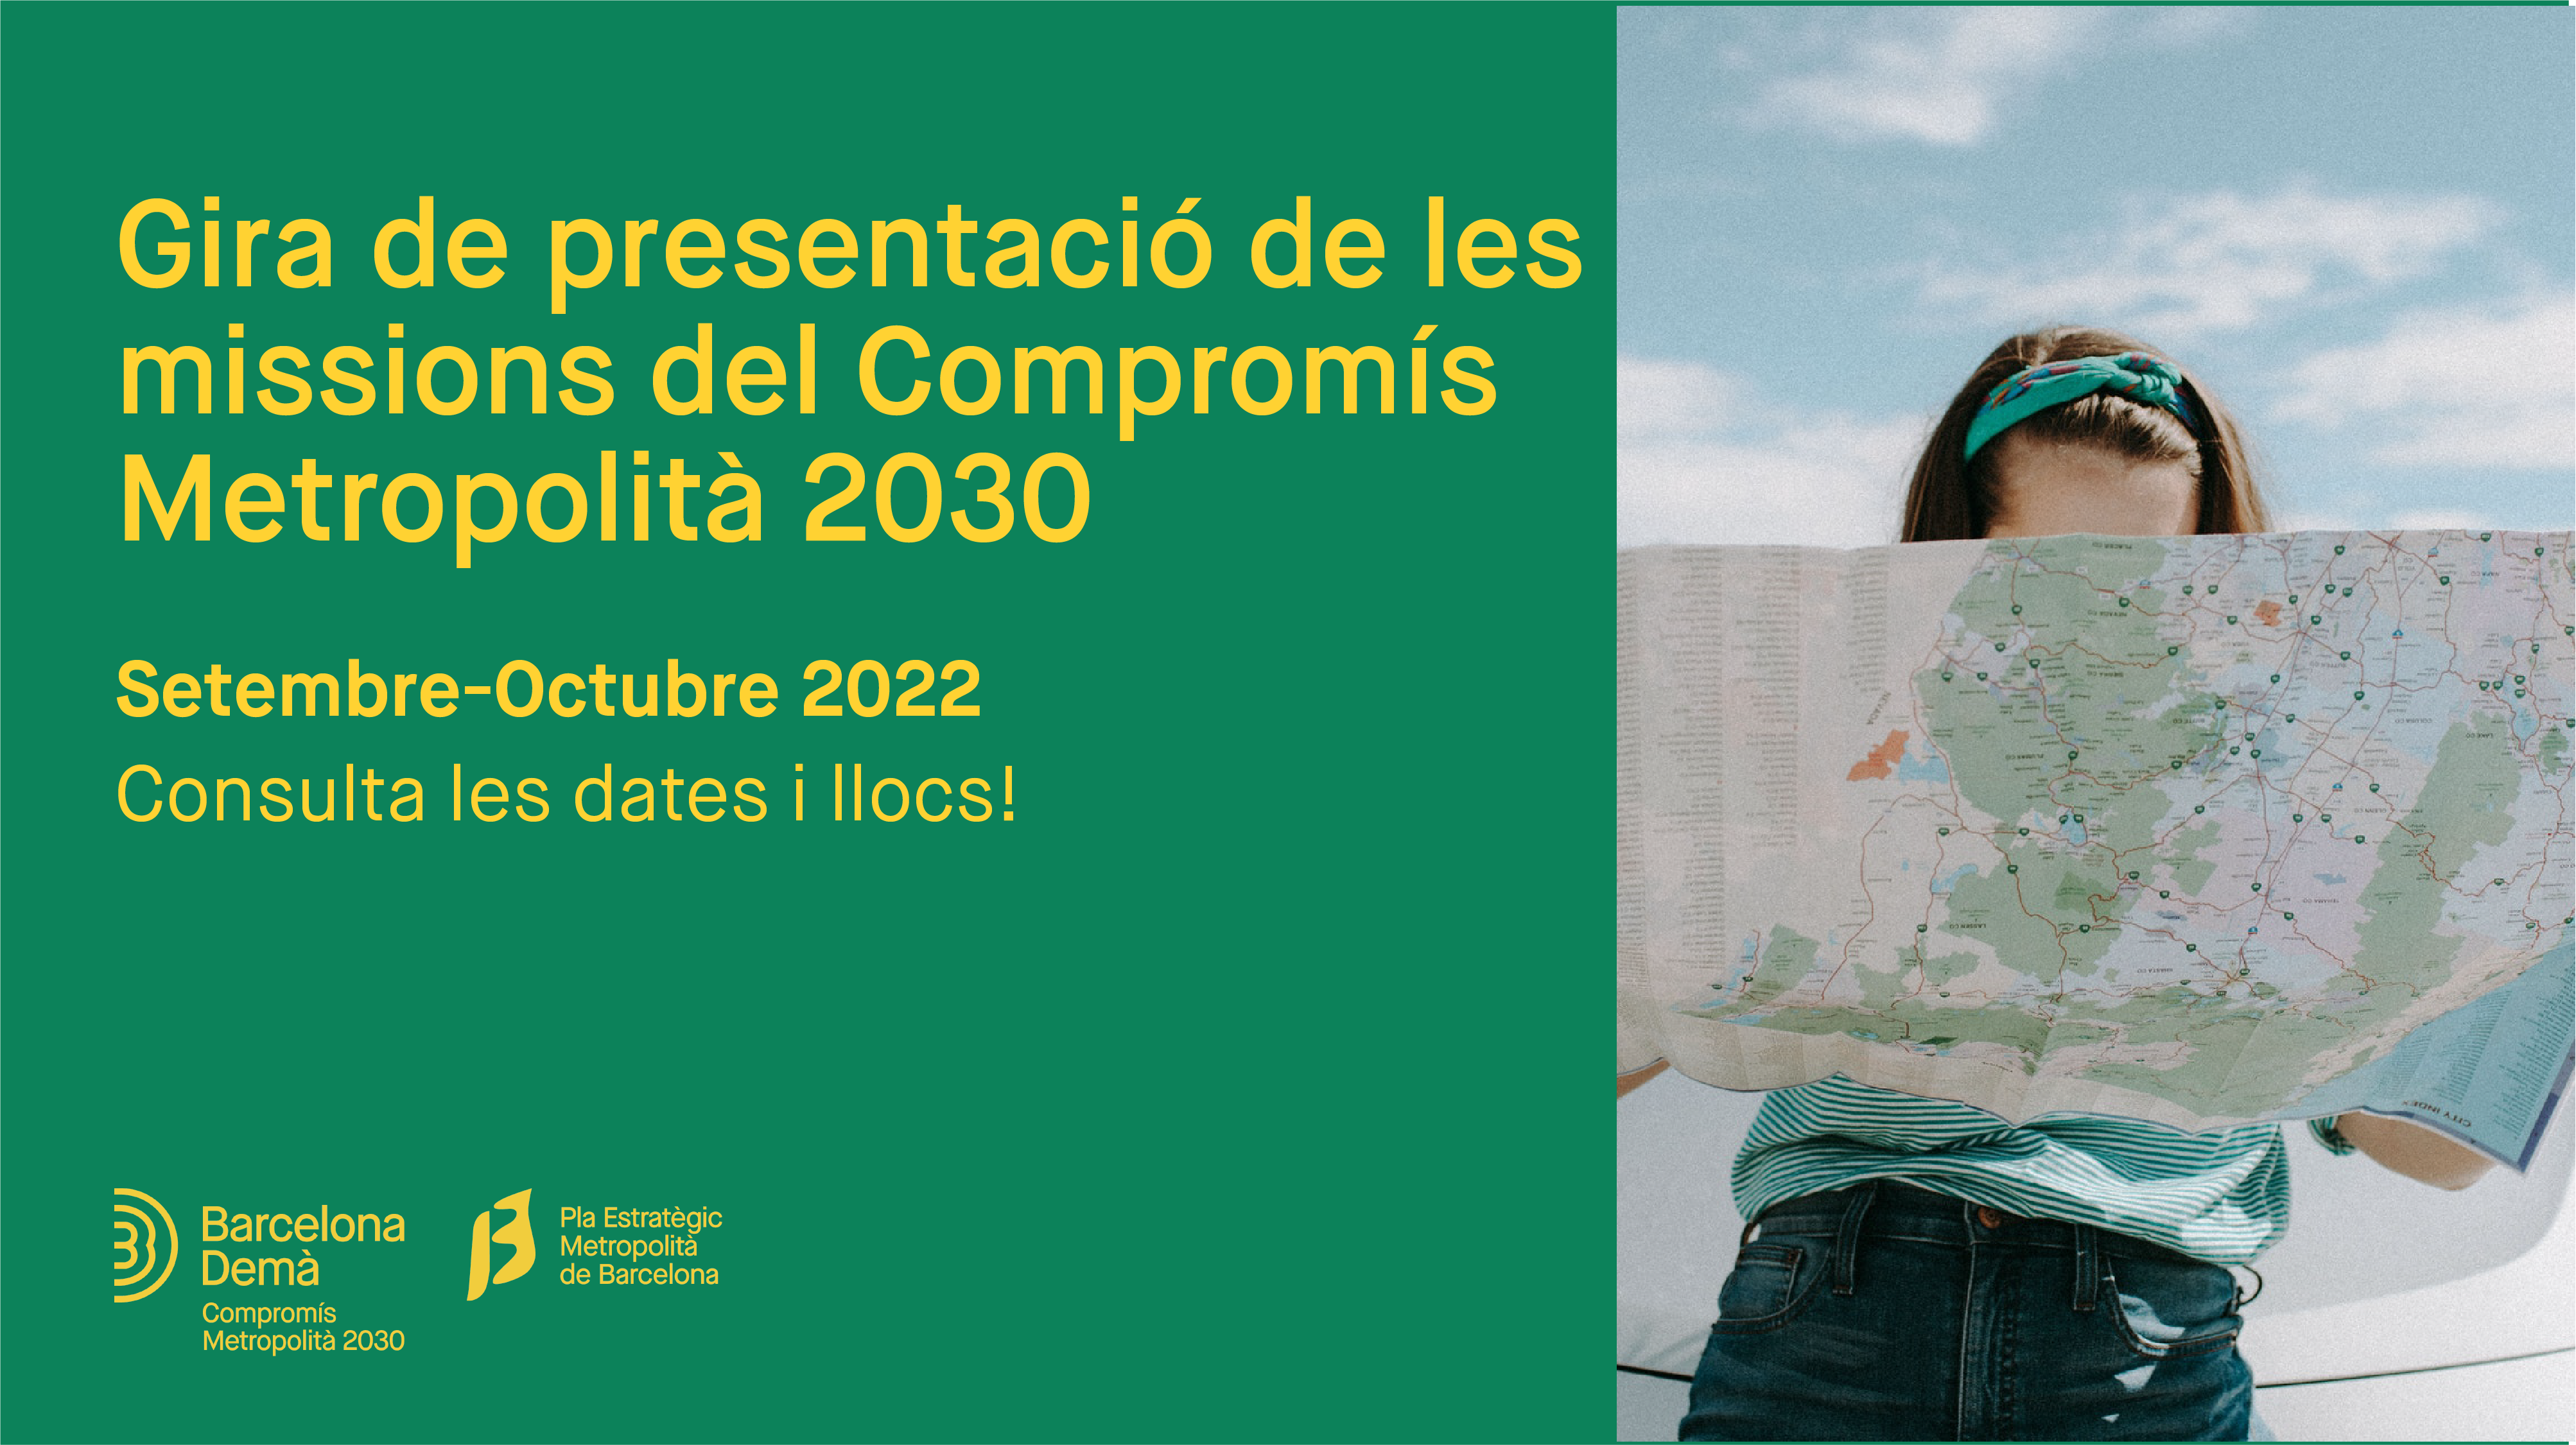 El PEMB organiza una gira en 8 municipios de la región metropolitana de Barcelona que culminará con la presentación del Compromís Metropolità 2030